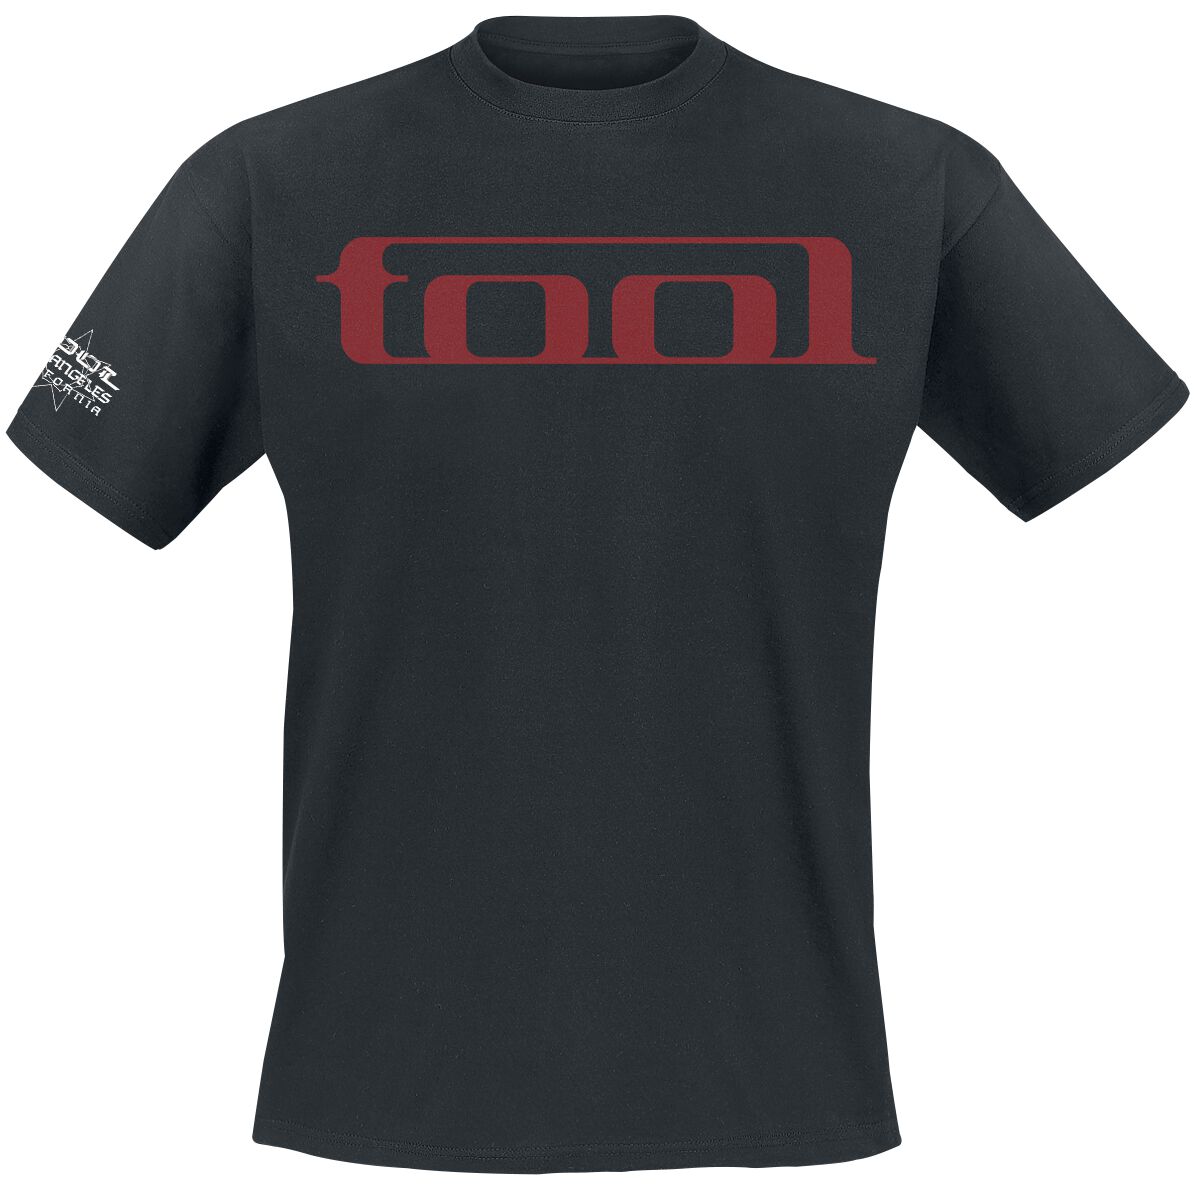 Tool T-Shirt - Undertow - S bis XXL - für Männer - Größe XXL - schwarz  - Lizenziertes Merchandise!